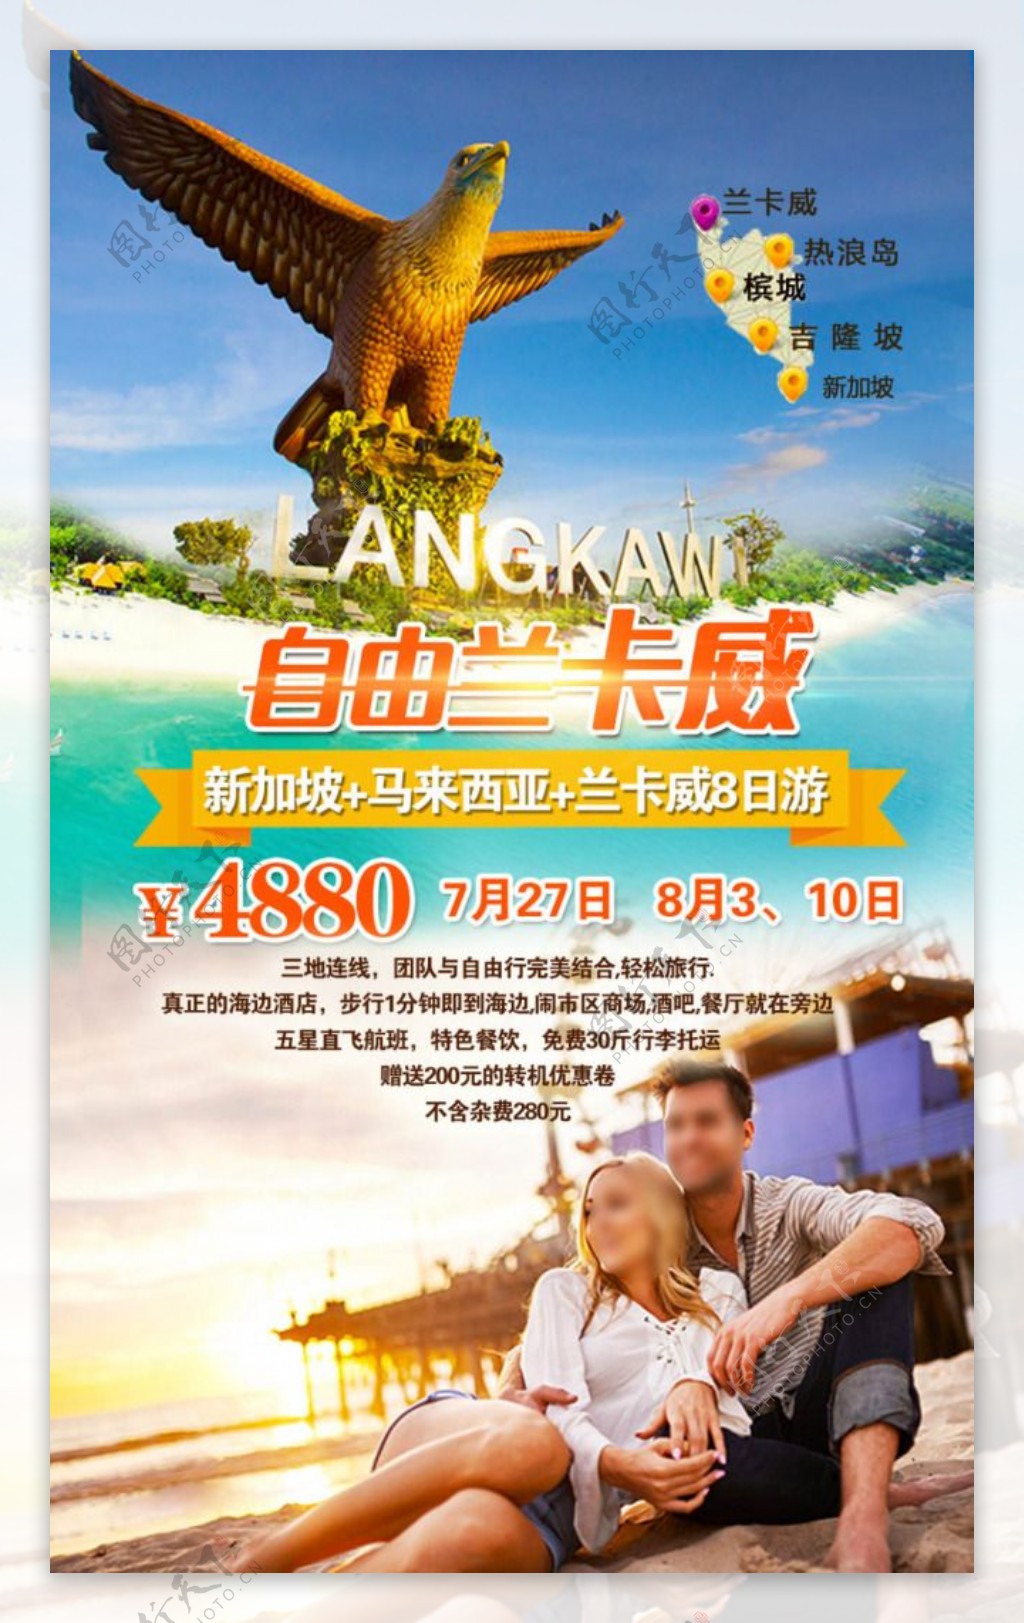 自由兰卡威旅游广告设计免费下载